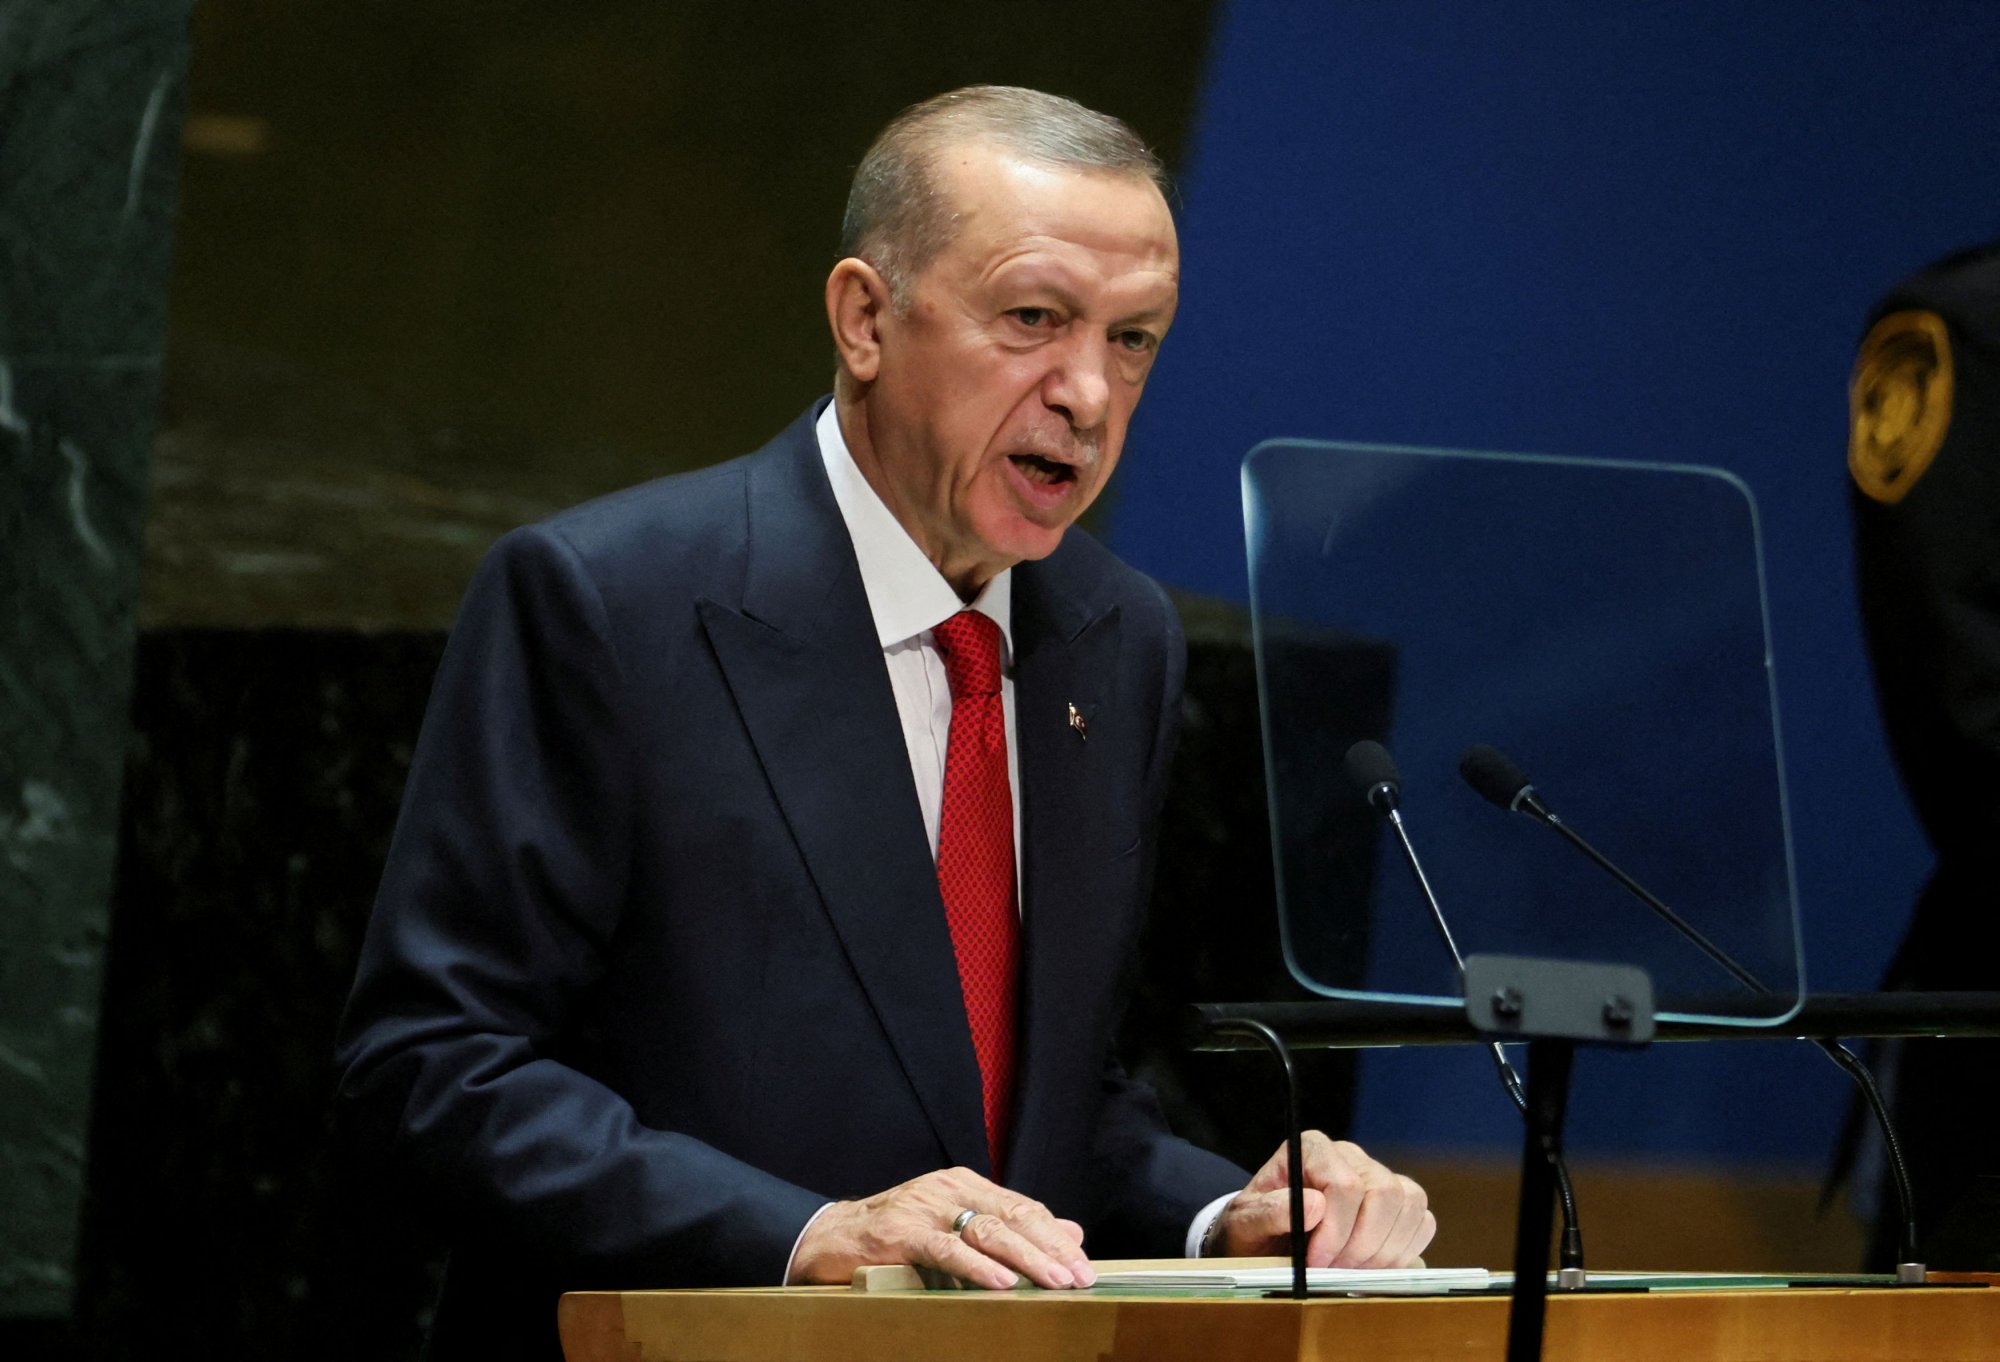 Ρετζέπ Ταγίπ Ερντογάν: «Οι τρομοκράτες δεν θα πετύχουν ποτέ τους σκοπούς τους» – Η πρώτη αντίδραση